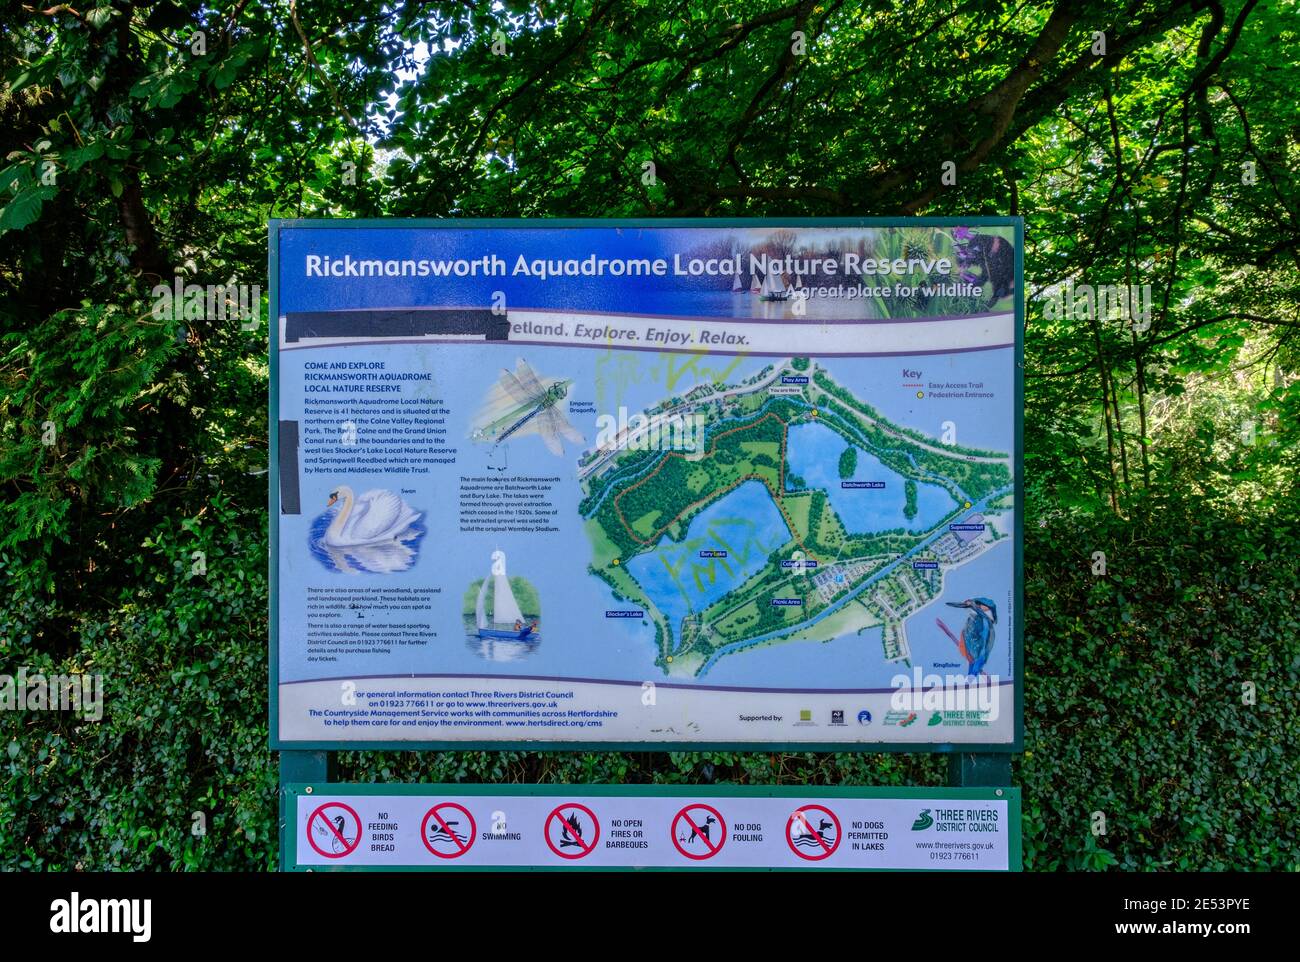 Öffentliche Informationstafel mit Details zu Rickmansworth Aquadrome, lokalem Naturschutzgebiet, gemischten Wäldern und Seen. Hertfordshire, England. Stockfoto